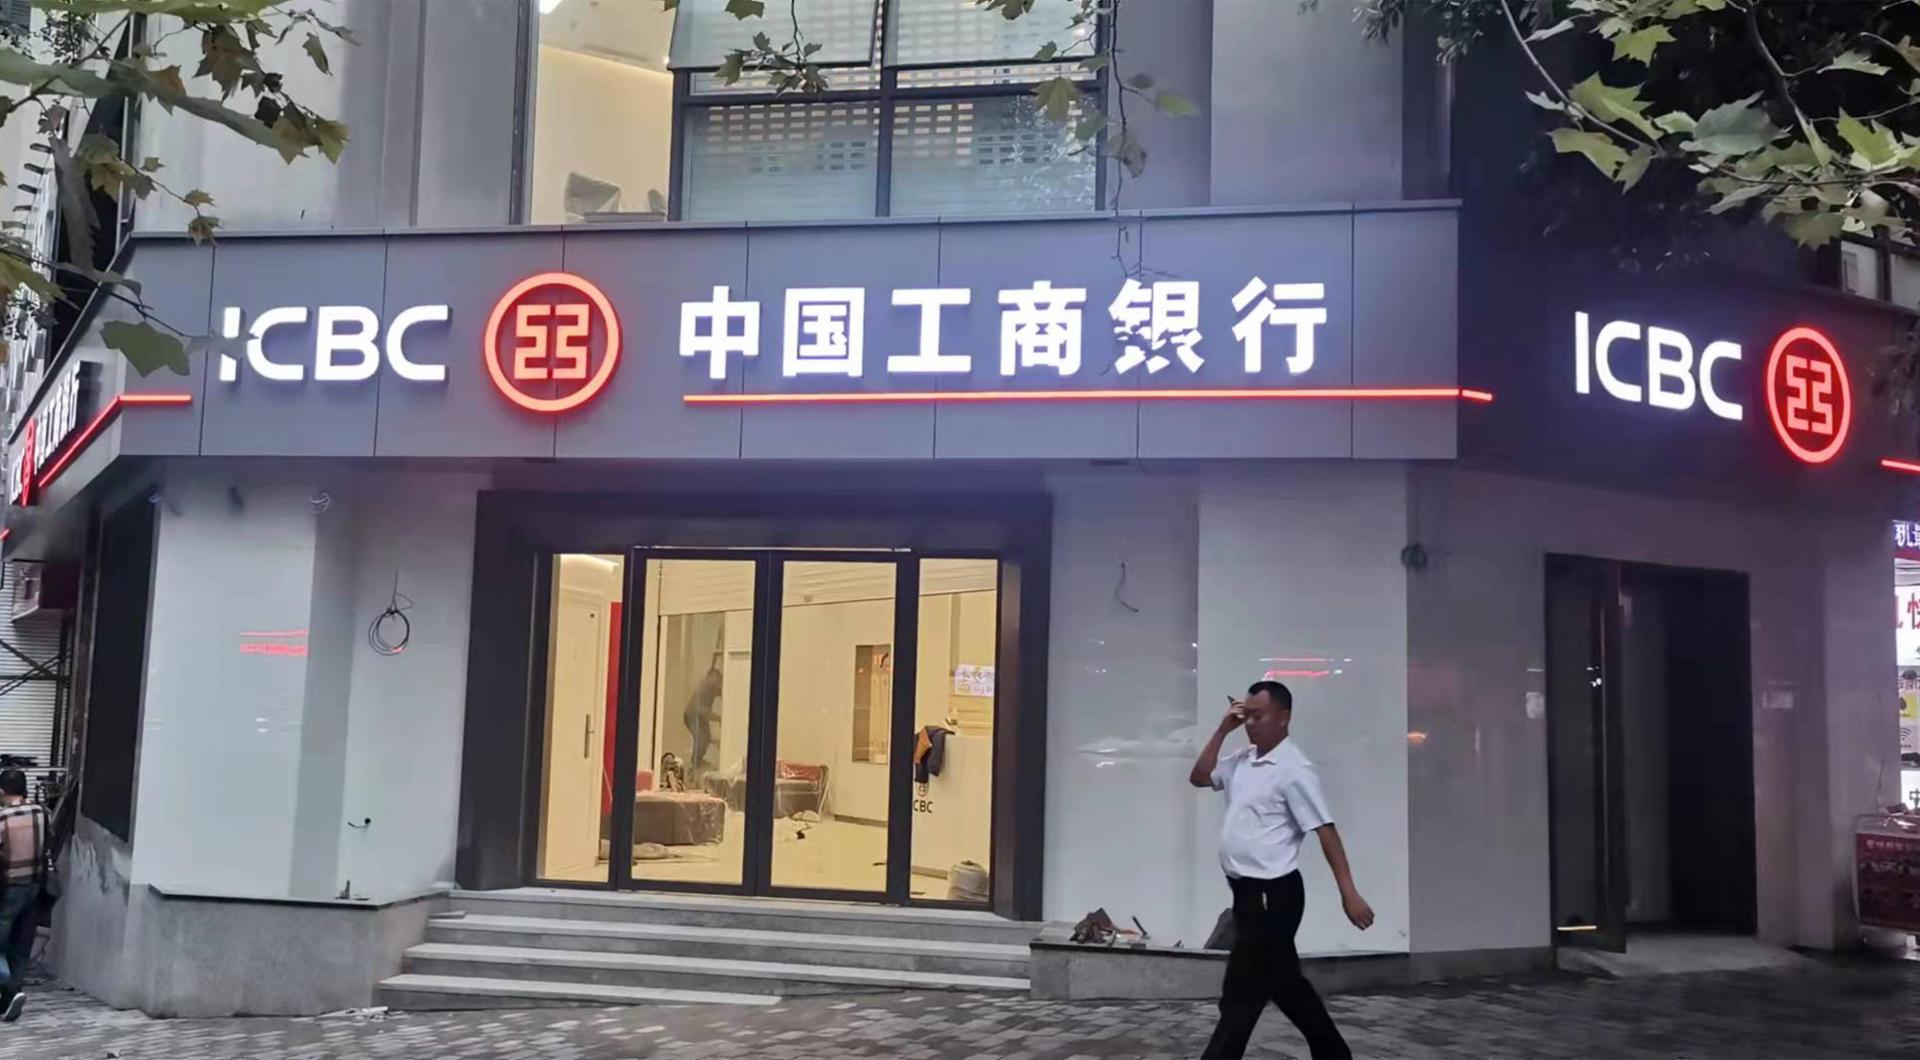 中国工商银行门楣标识